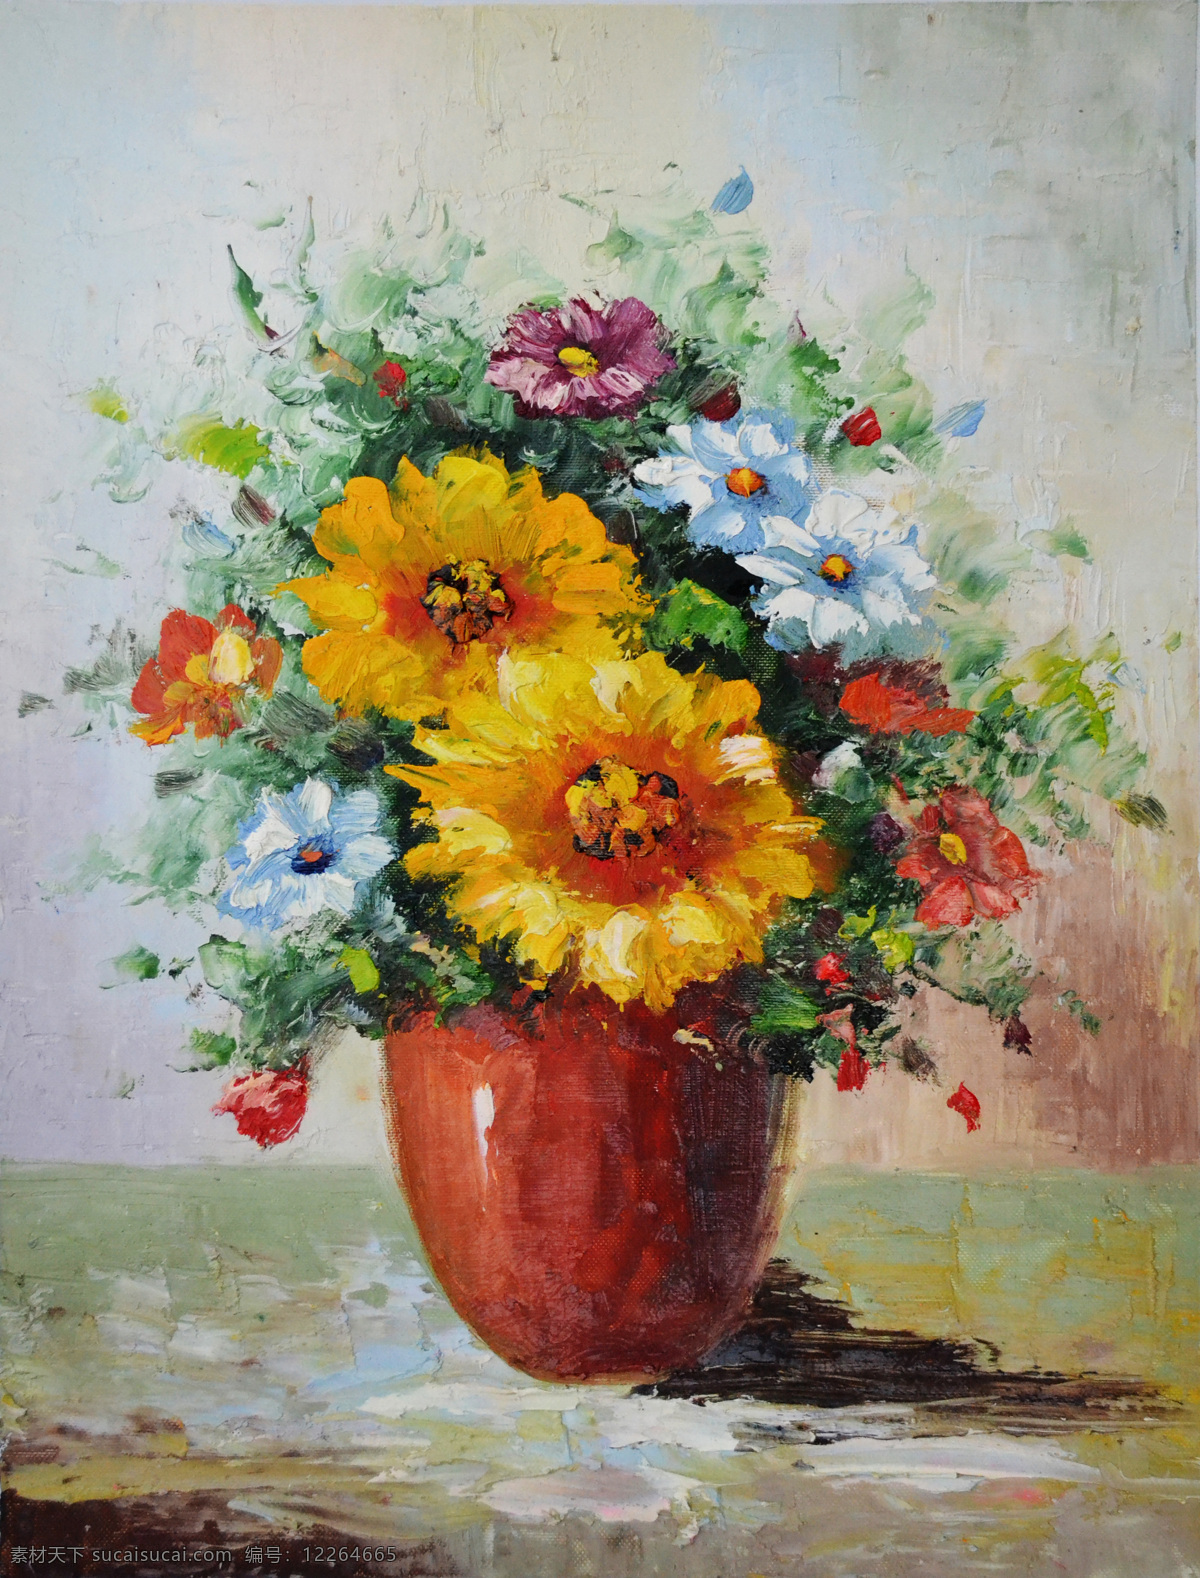 花卉图片 花卉 花卉模板下载 花卉设计素材 绘画书法 文化艺术 油画花卉 装饰素材